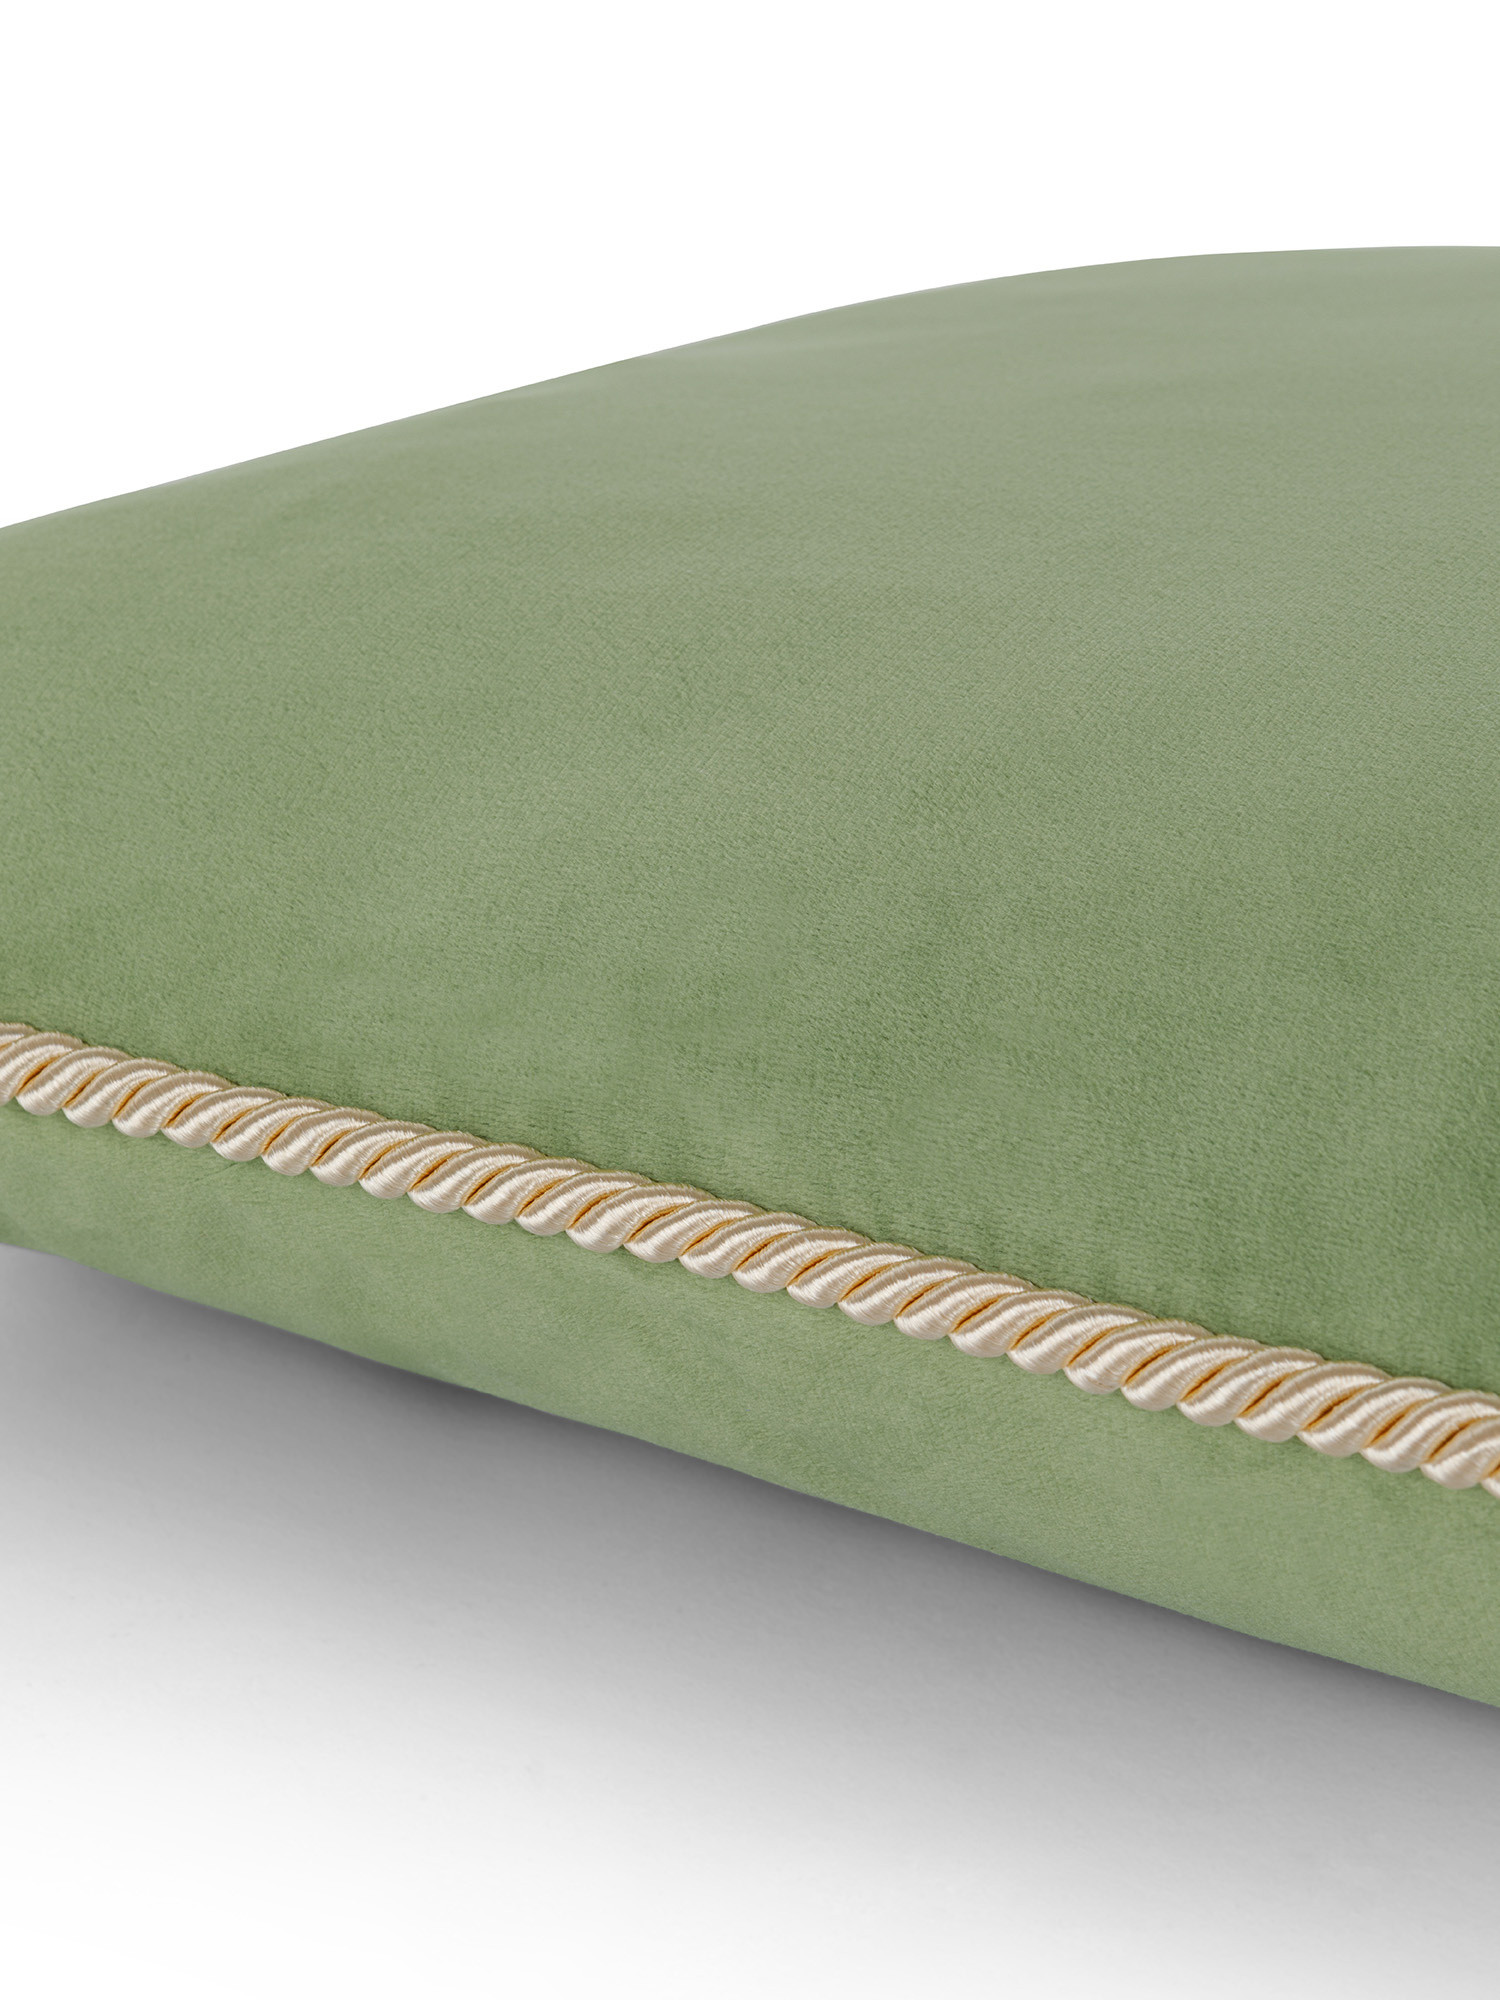 Cuscino in velluto 45x45 cm, Verde chiaro, large image number 2